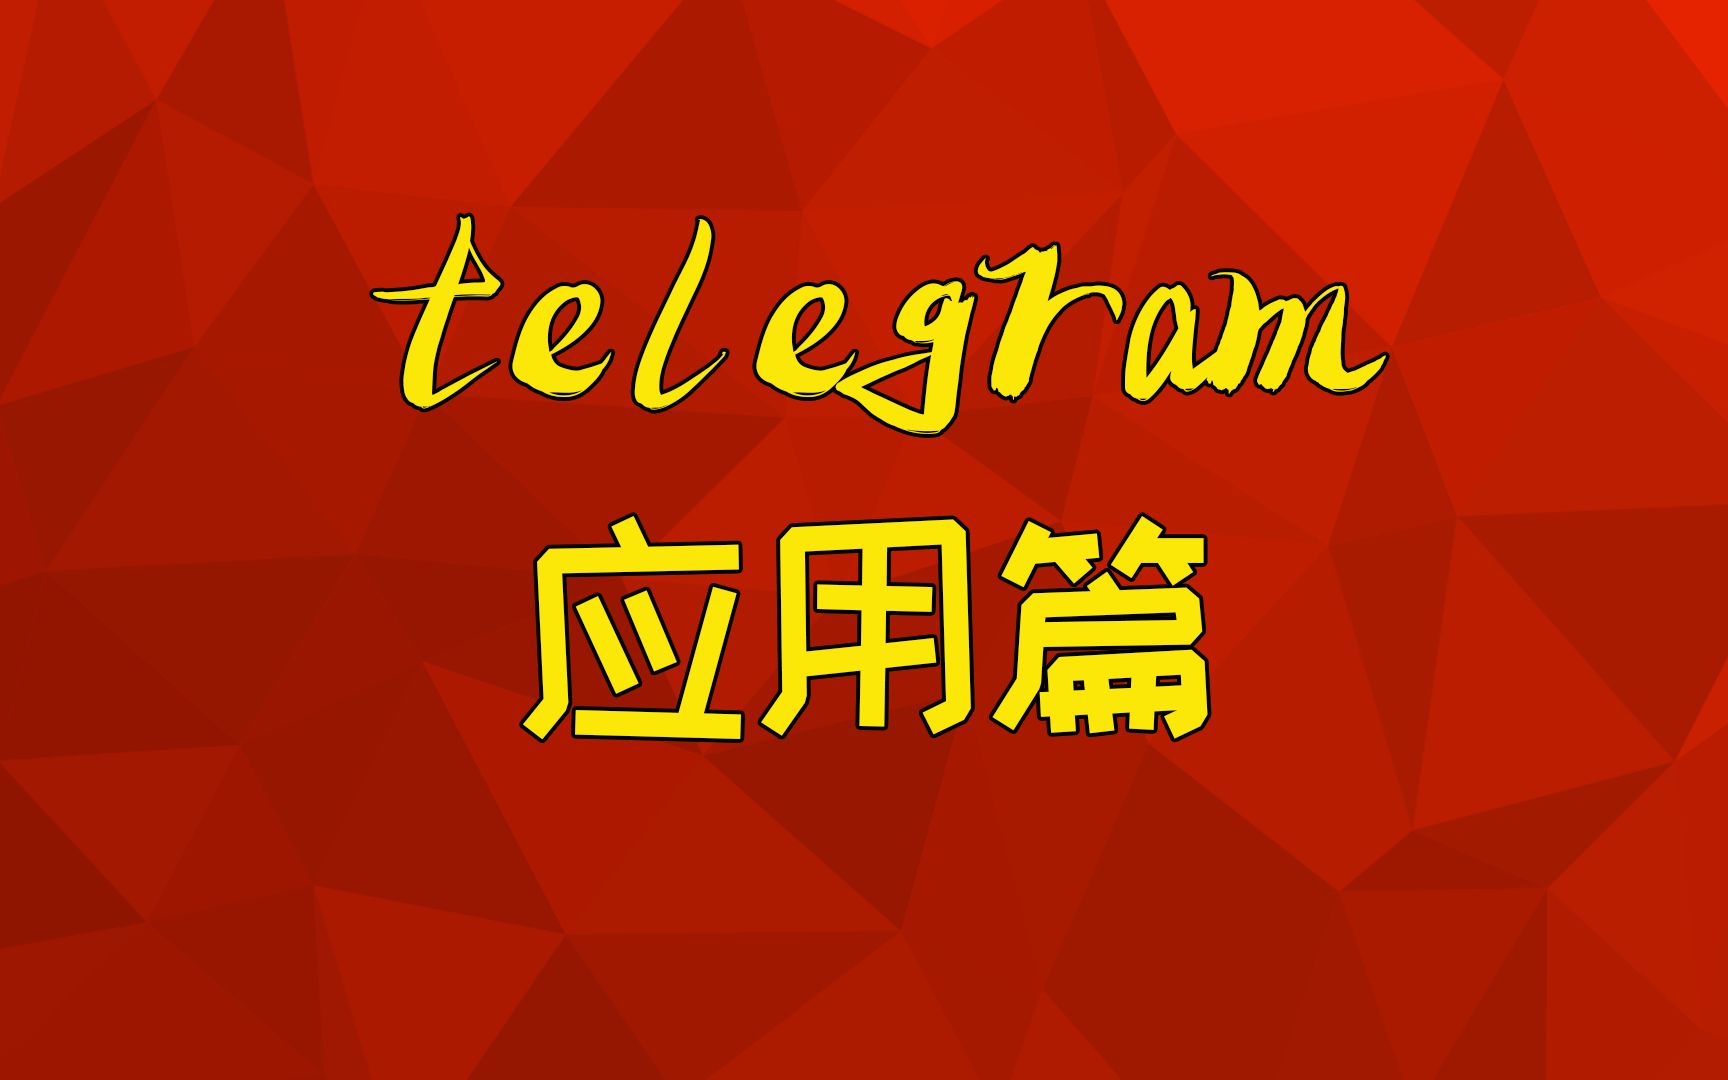 能用中国开头注册公司吗_telegram在中国不能用吗_能用中国手机号注册谷歌吗